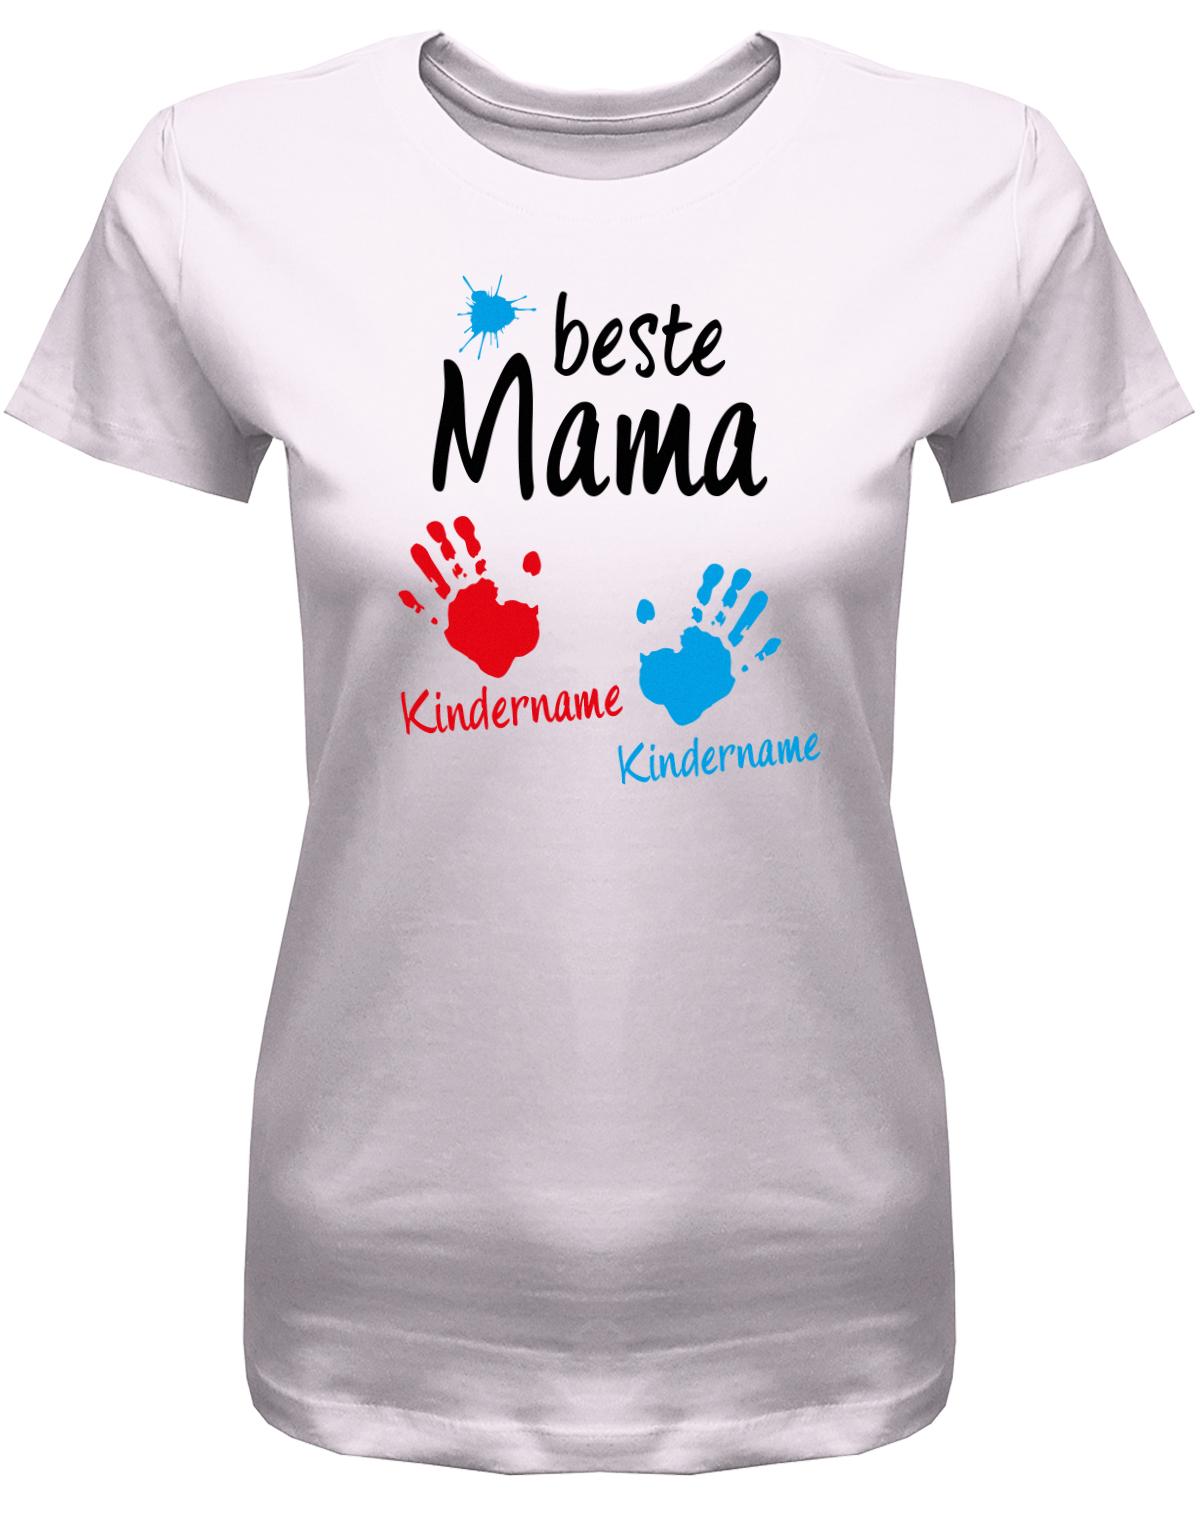 Beste-Mama-2-Kinder-Wusnchnamen-Damen-Shirt-Rosa